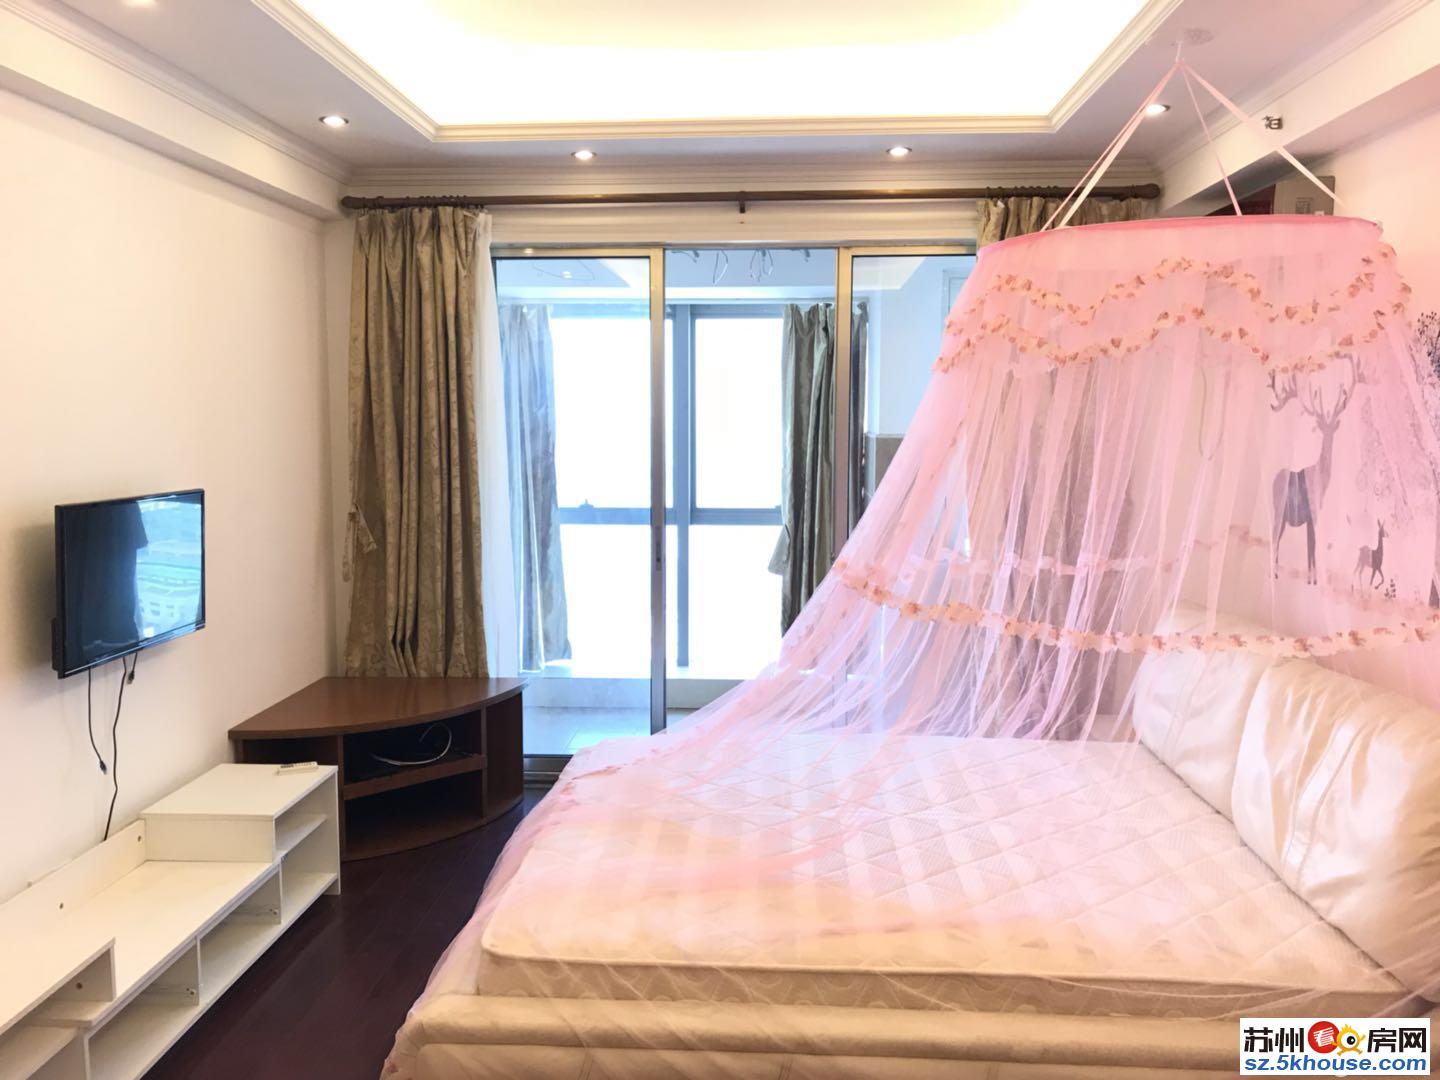 中翔丽晶酒店式公寓 高品质人文社区紧靠大润发 白金汉爵